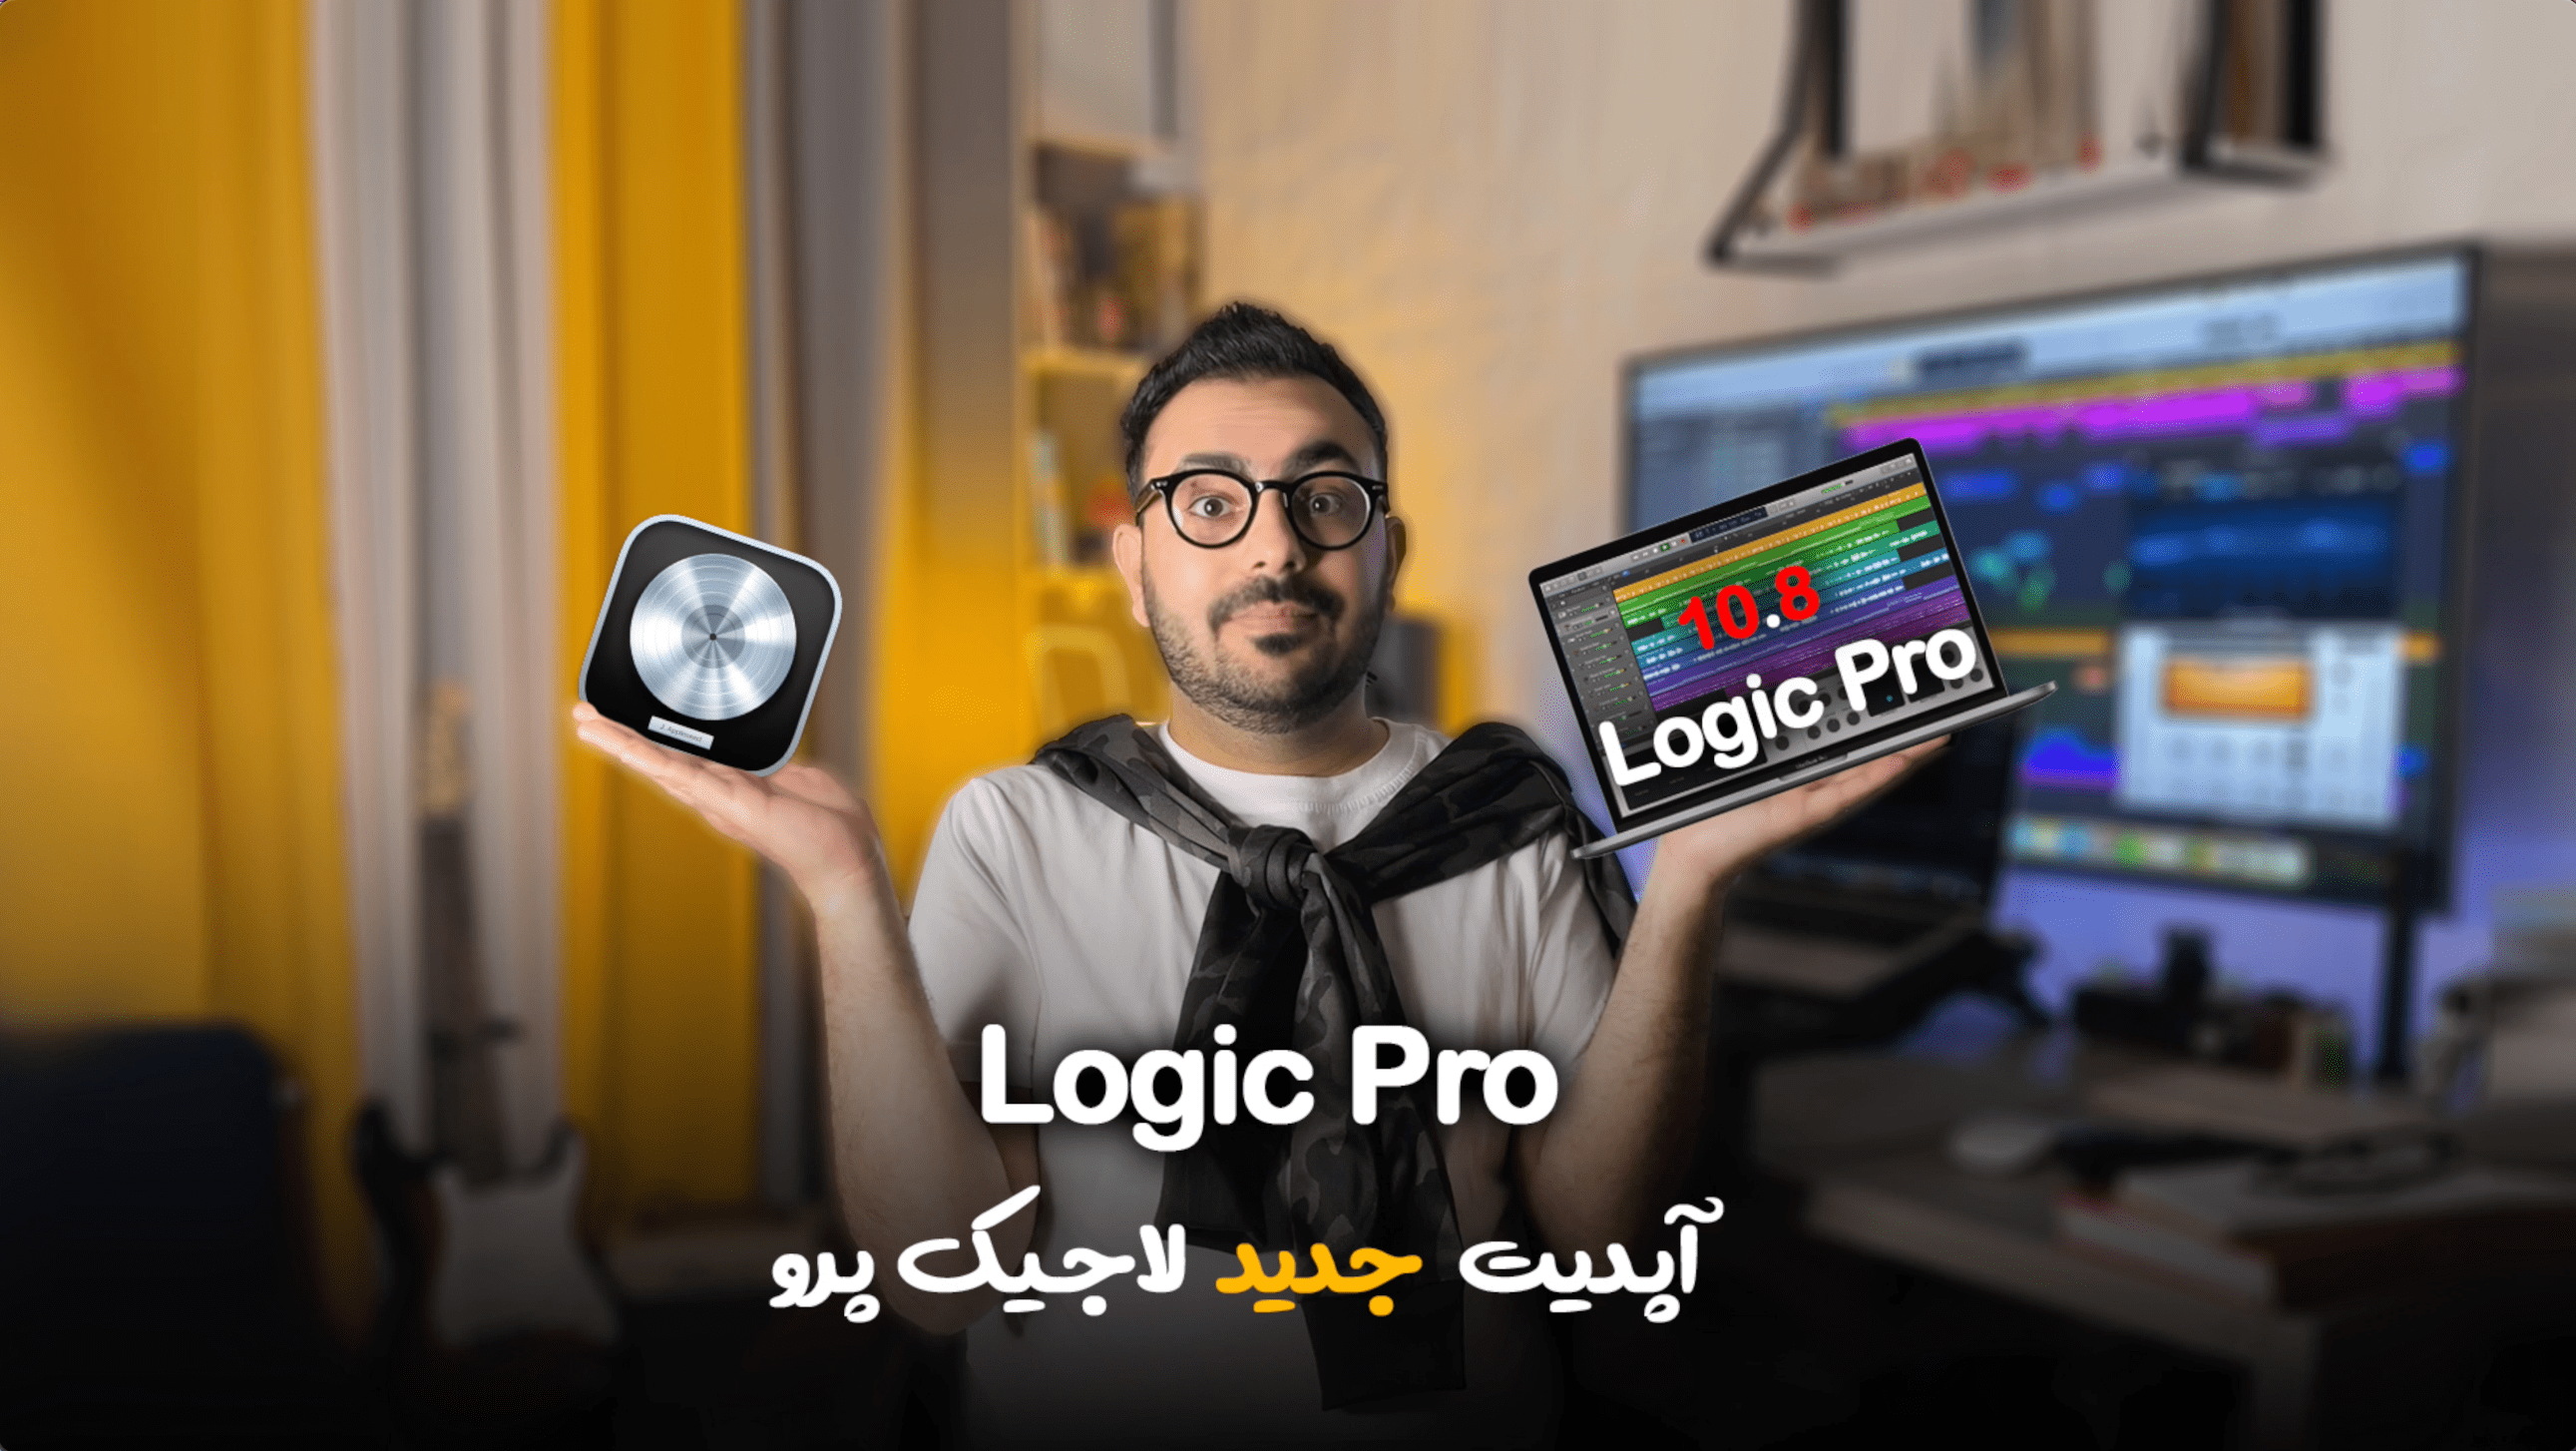 Logic Pro 10.8 اپل برنامه لاجیک پرو بعد از مدت ها بروز رسانی کرد در ویدیو زیر میخواهیم به جزییات و قابلیت های جدید این نسخه یعنی لاجیک پرو 10.8 بیشتر آشنا شویم